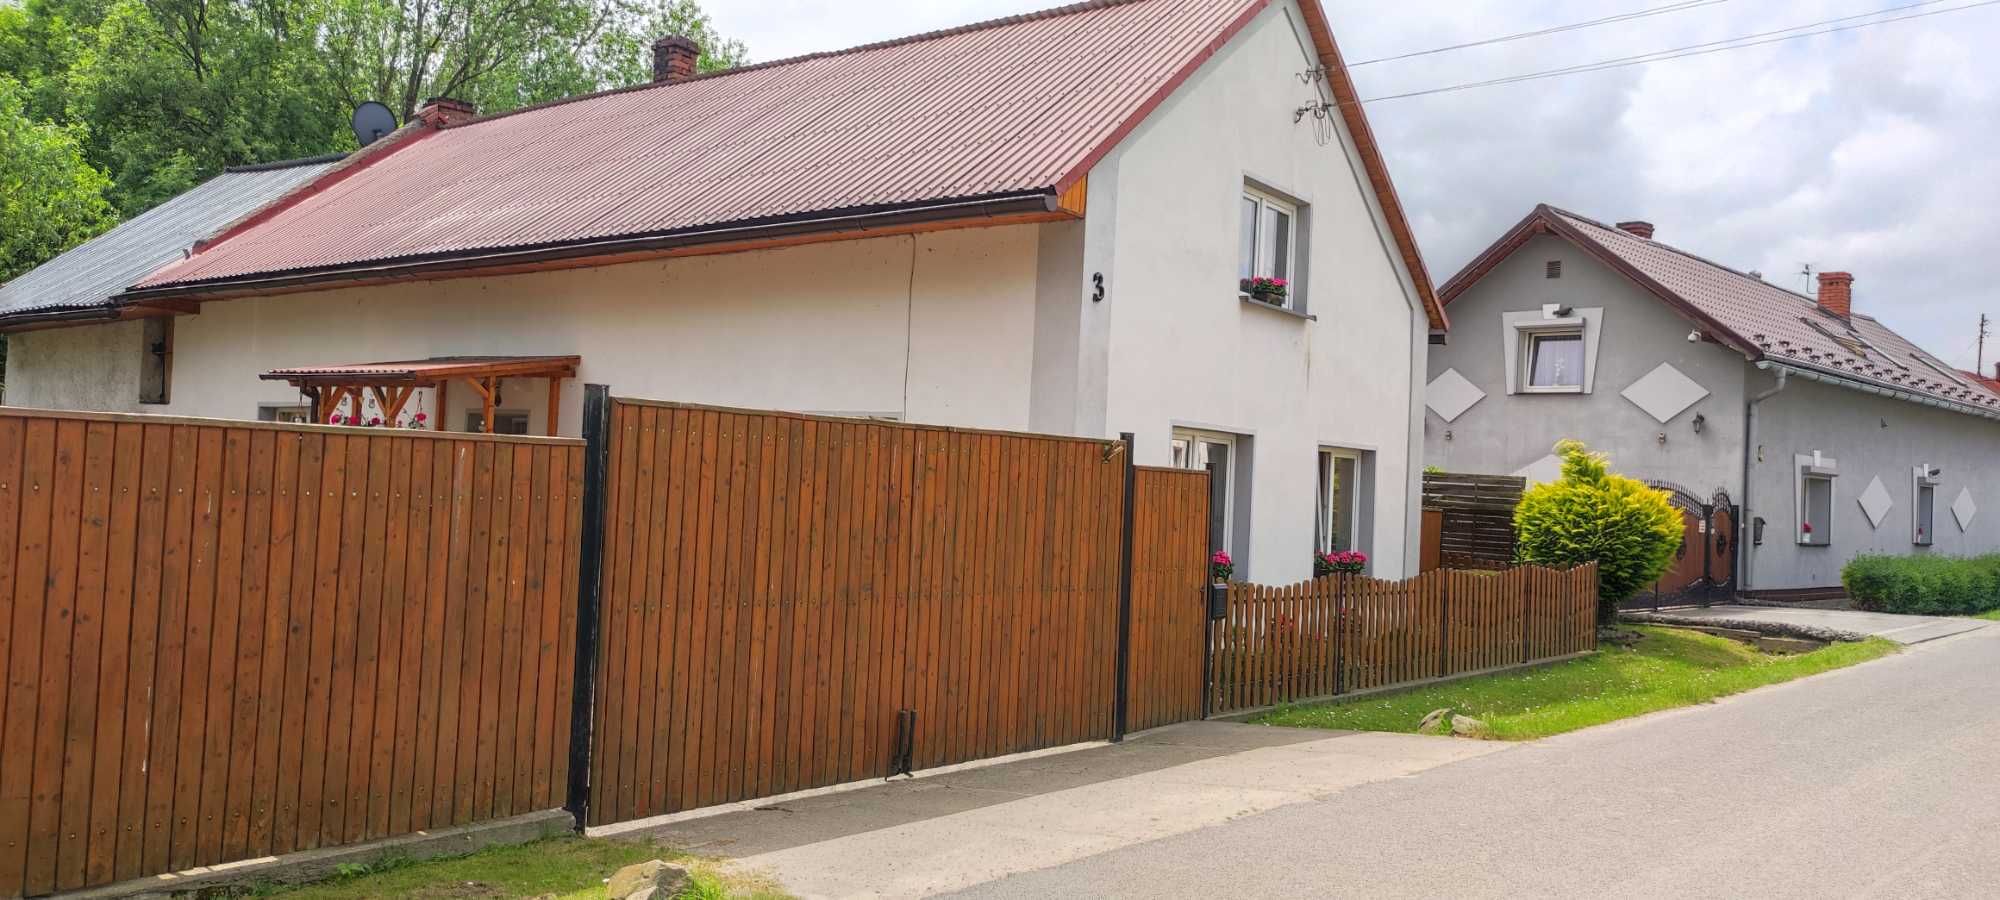 Sprzedam Dom Nowa Wieś Głubczycka, Woj. Opolskie